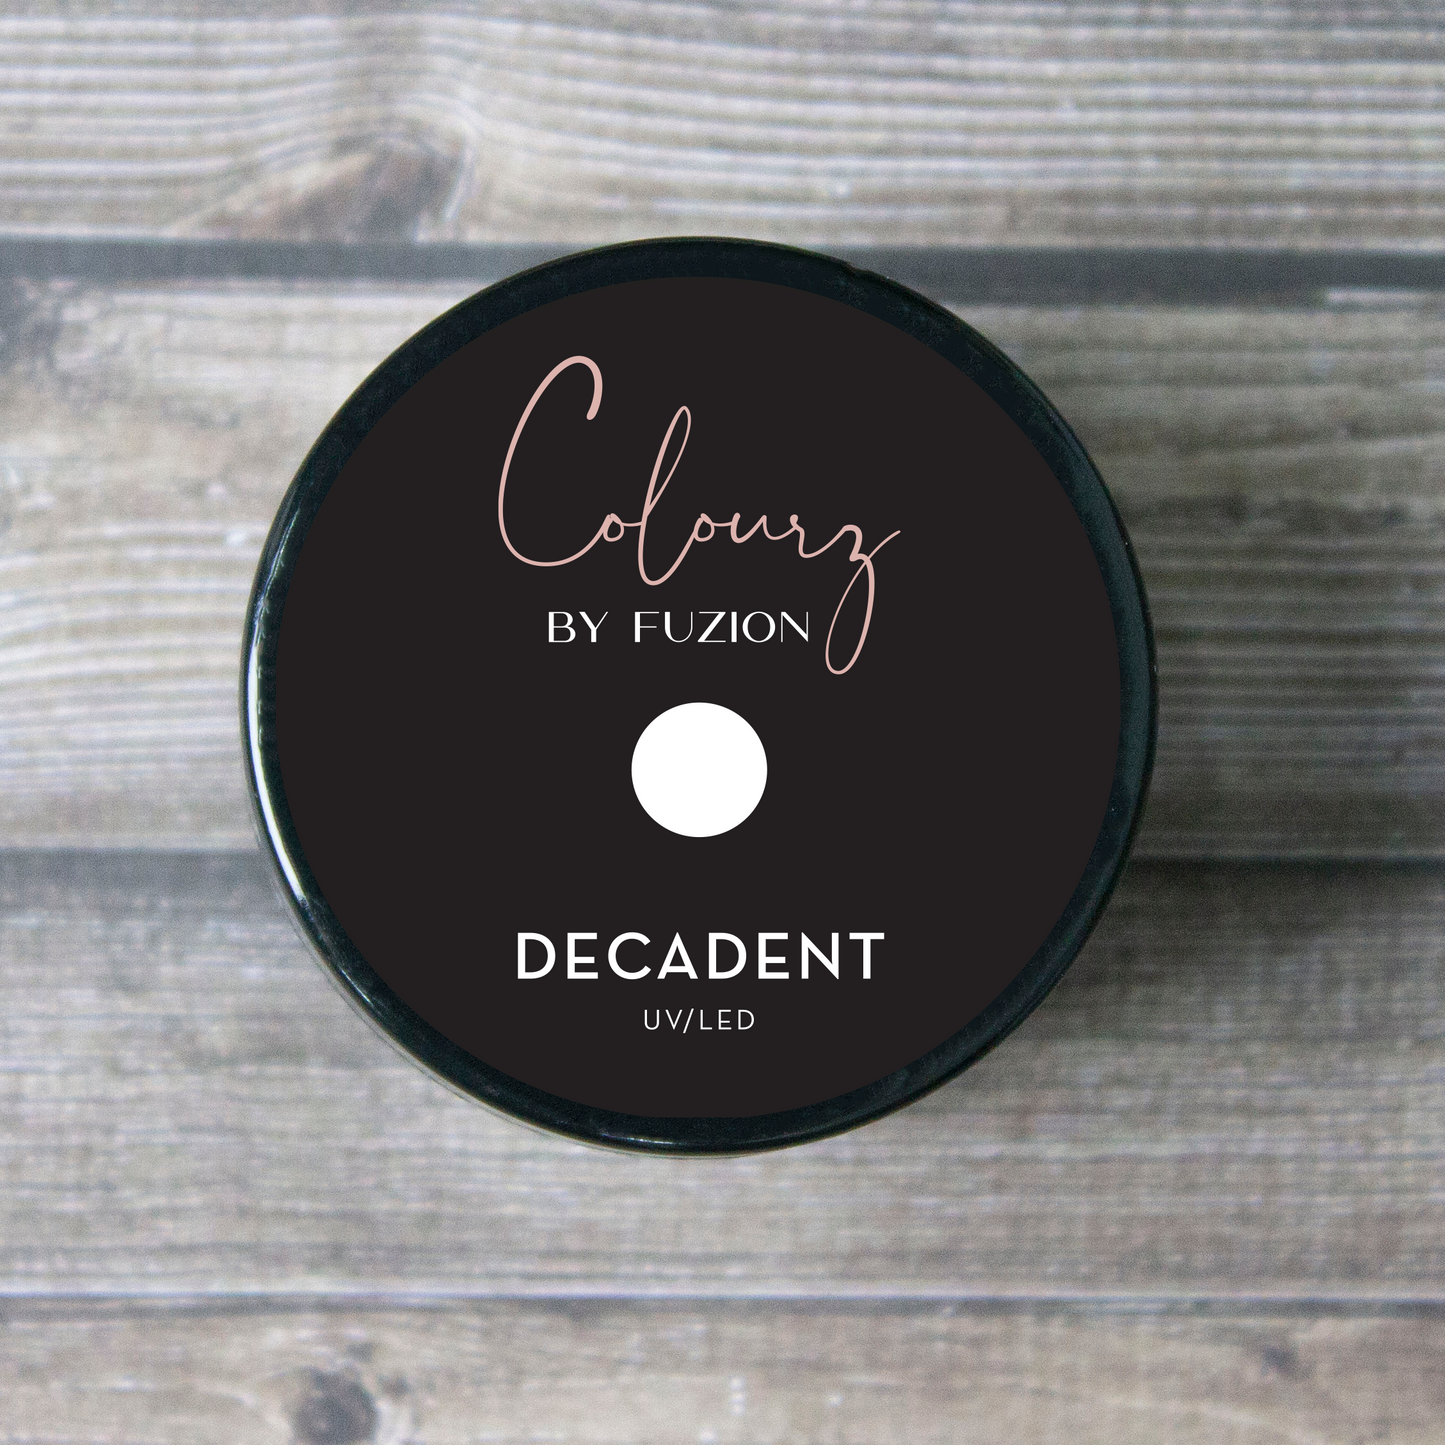 Decadent | Colourz